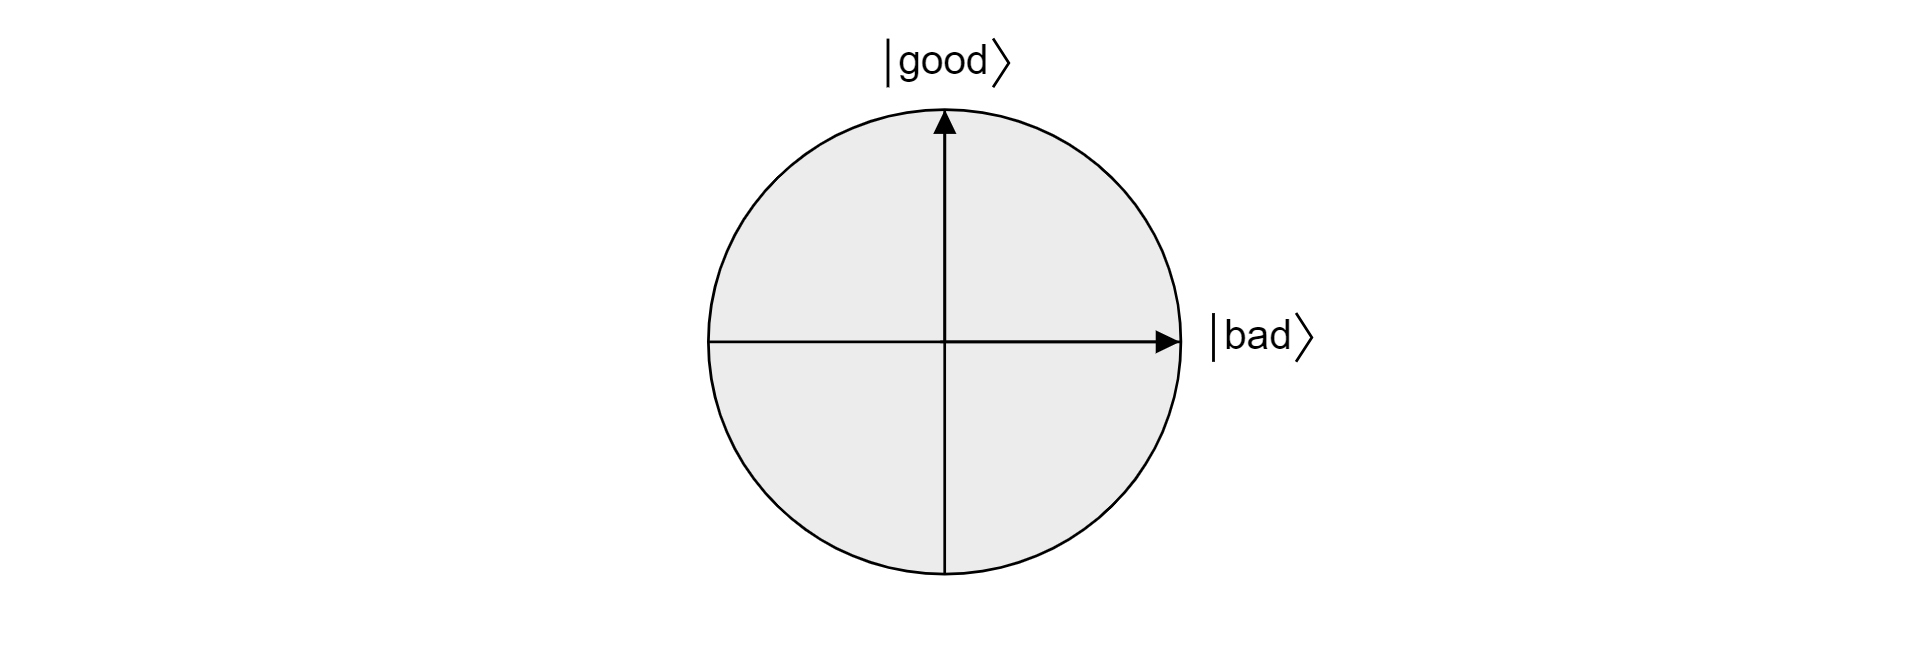 Plot bidang di bola Bloch yang diproyeksikan oleh vektor baik dan buruk ortogonal.